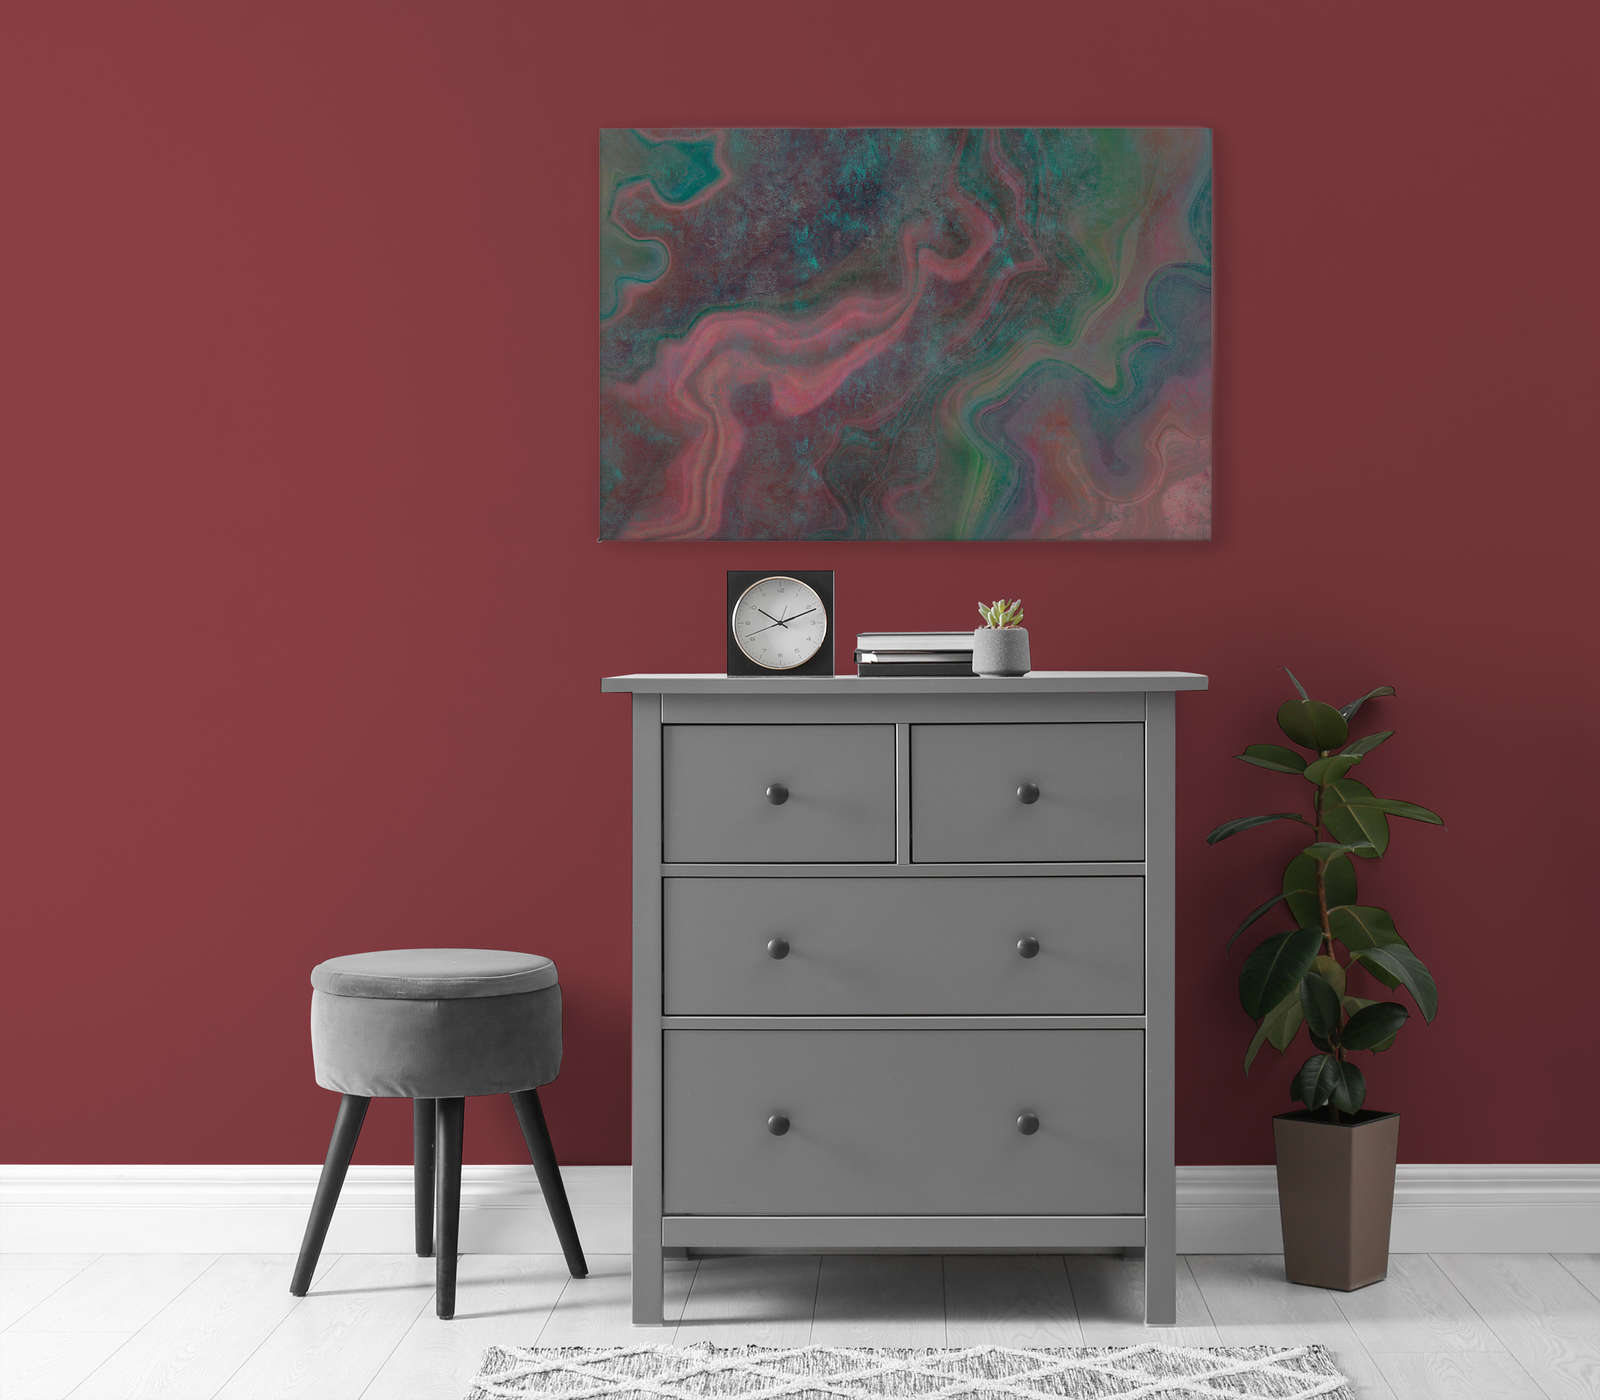             Marble 1 - Marbre coloré pour mettre en valeur la toile avec structure rayée - 0,90 m x 0,60 m
        